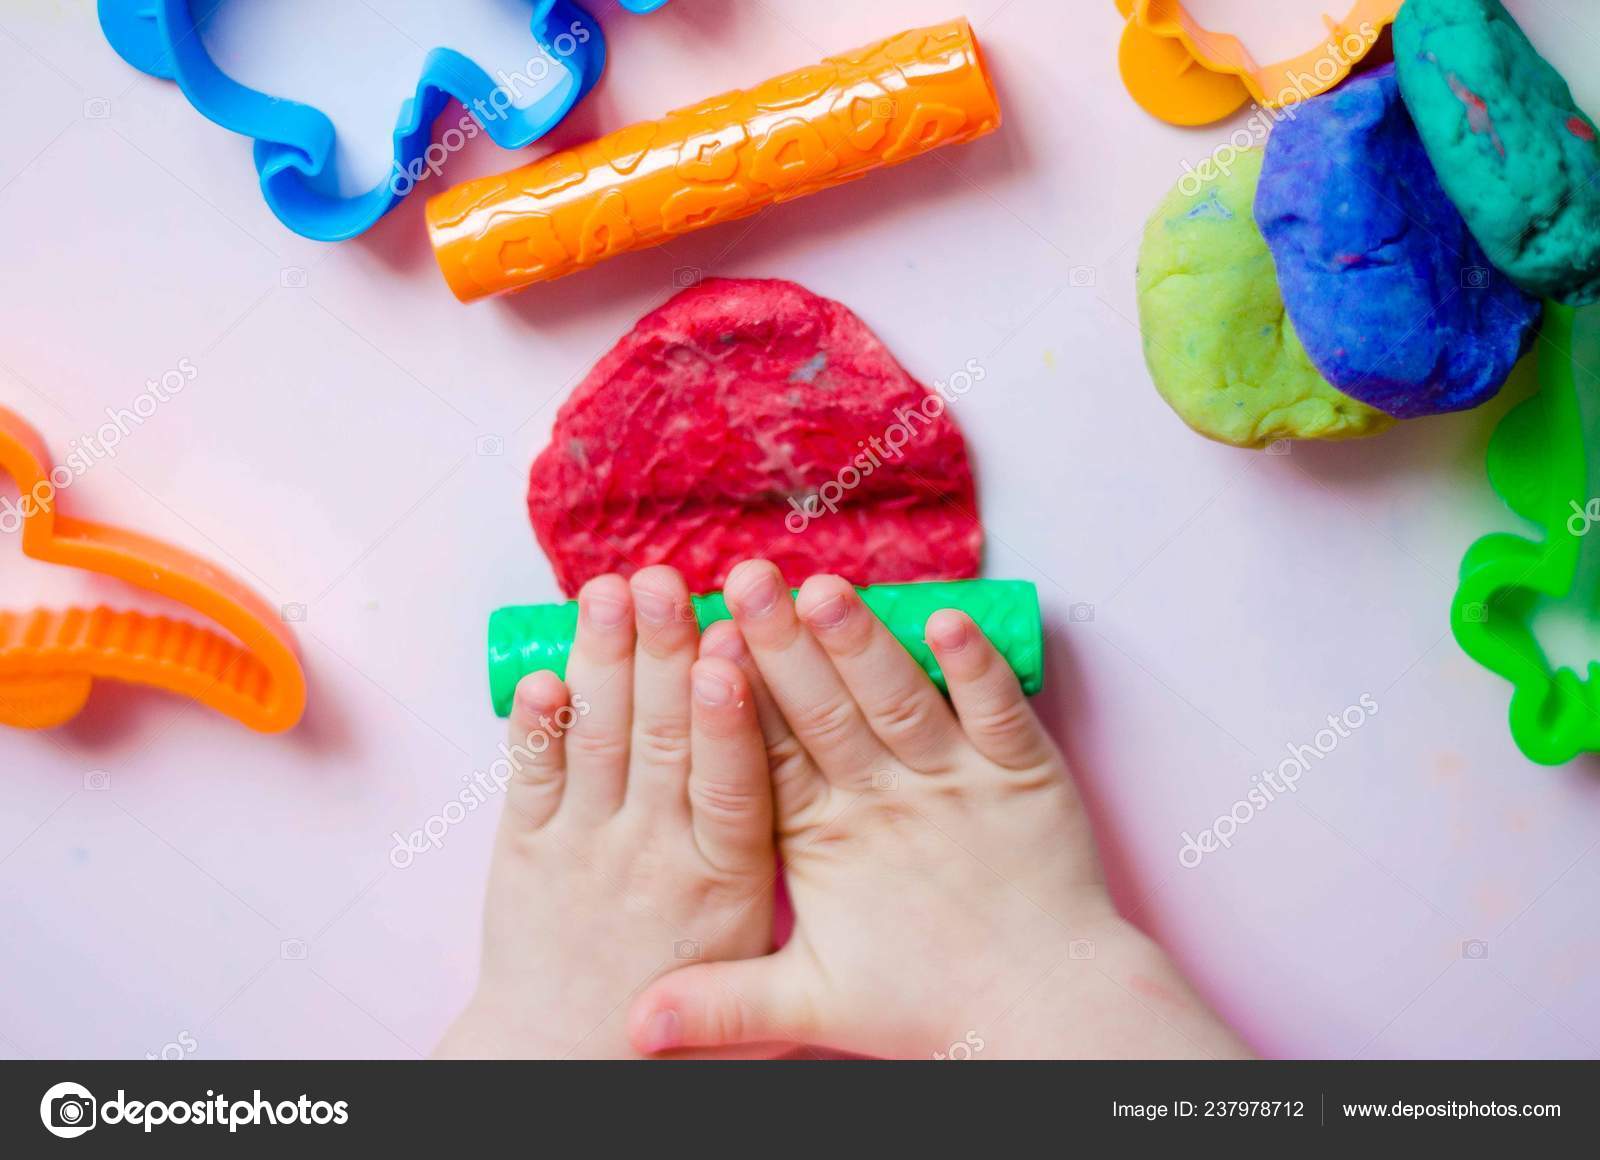 Покажи где пластилин. Пластилин для детей. Пластилин в руках. Ребенок раскатывает пластилин. Пластилин в руках у детей.